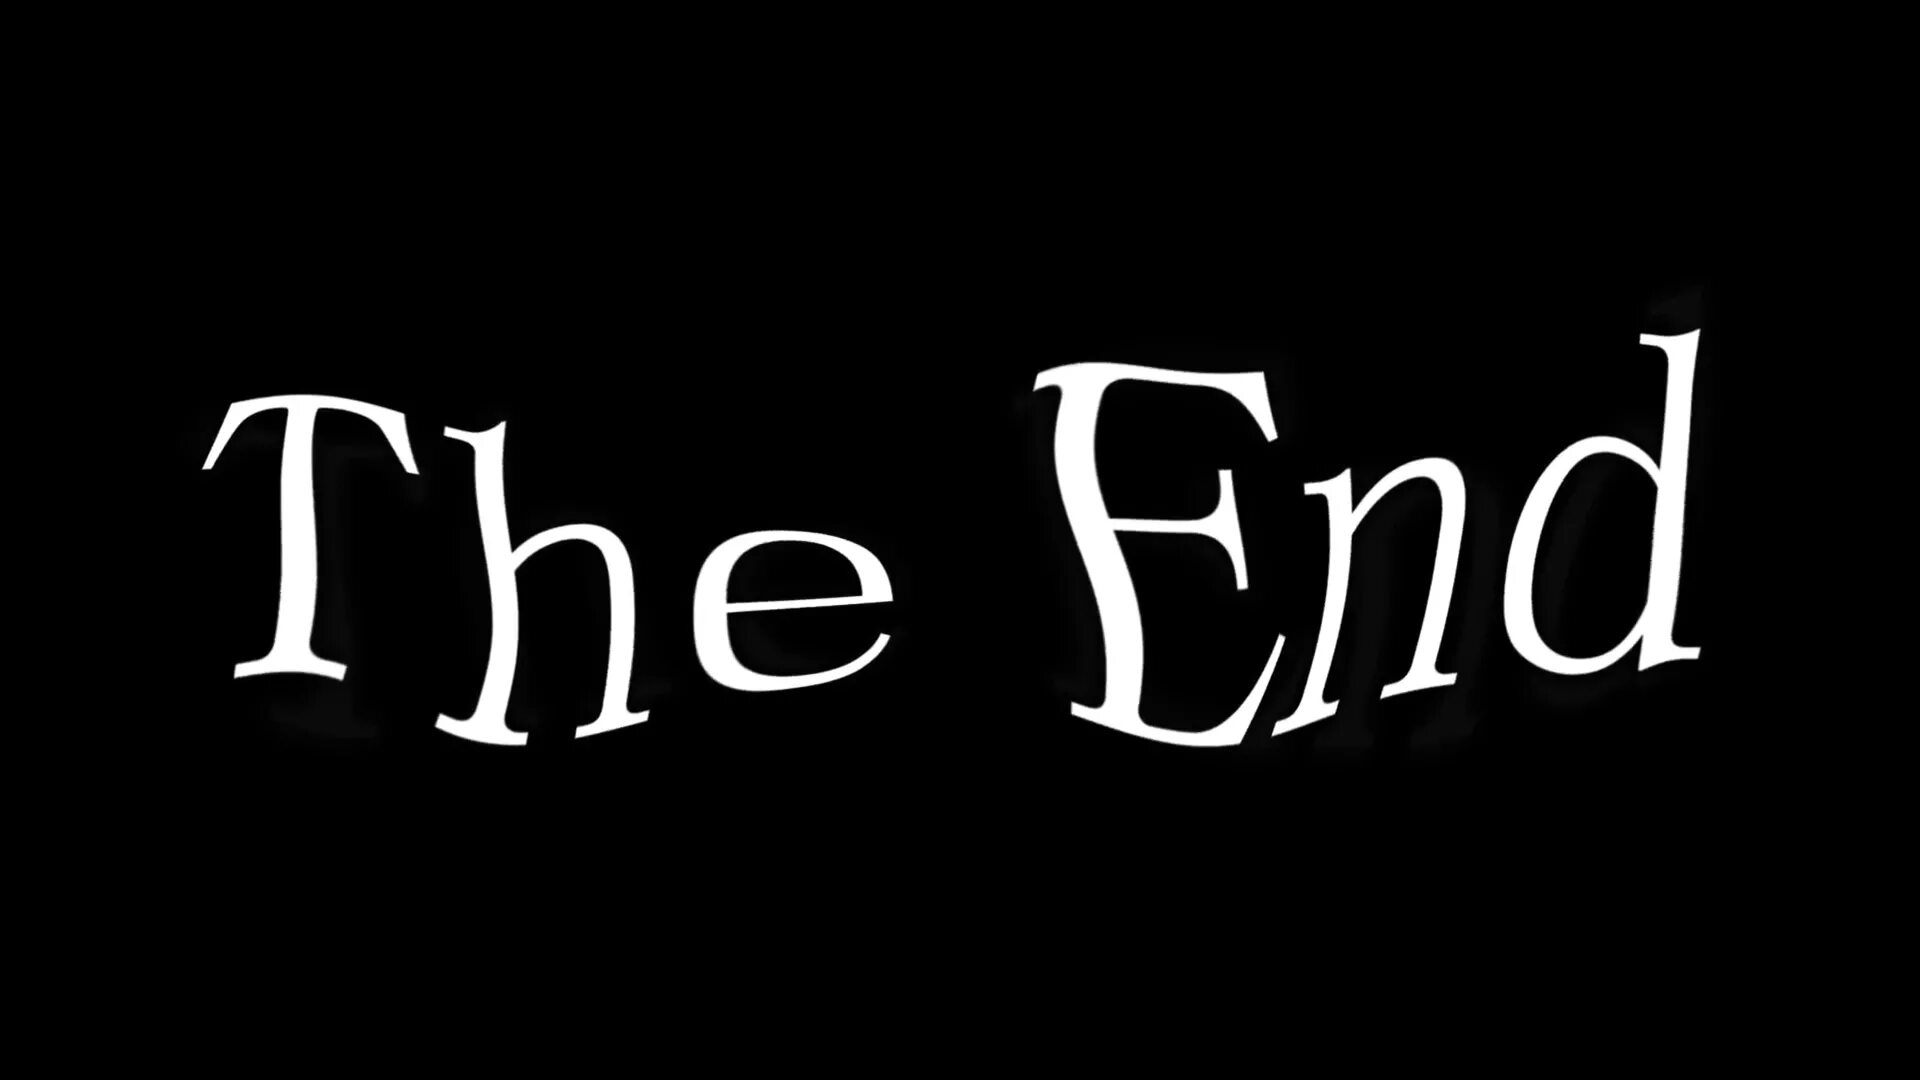 Картинка the end. The end. The end надпись. Надписи на черном фоне. The end картинка.